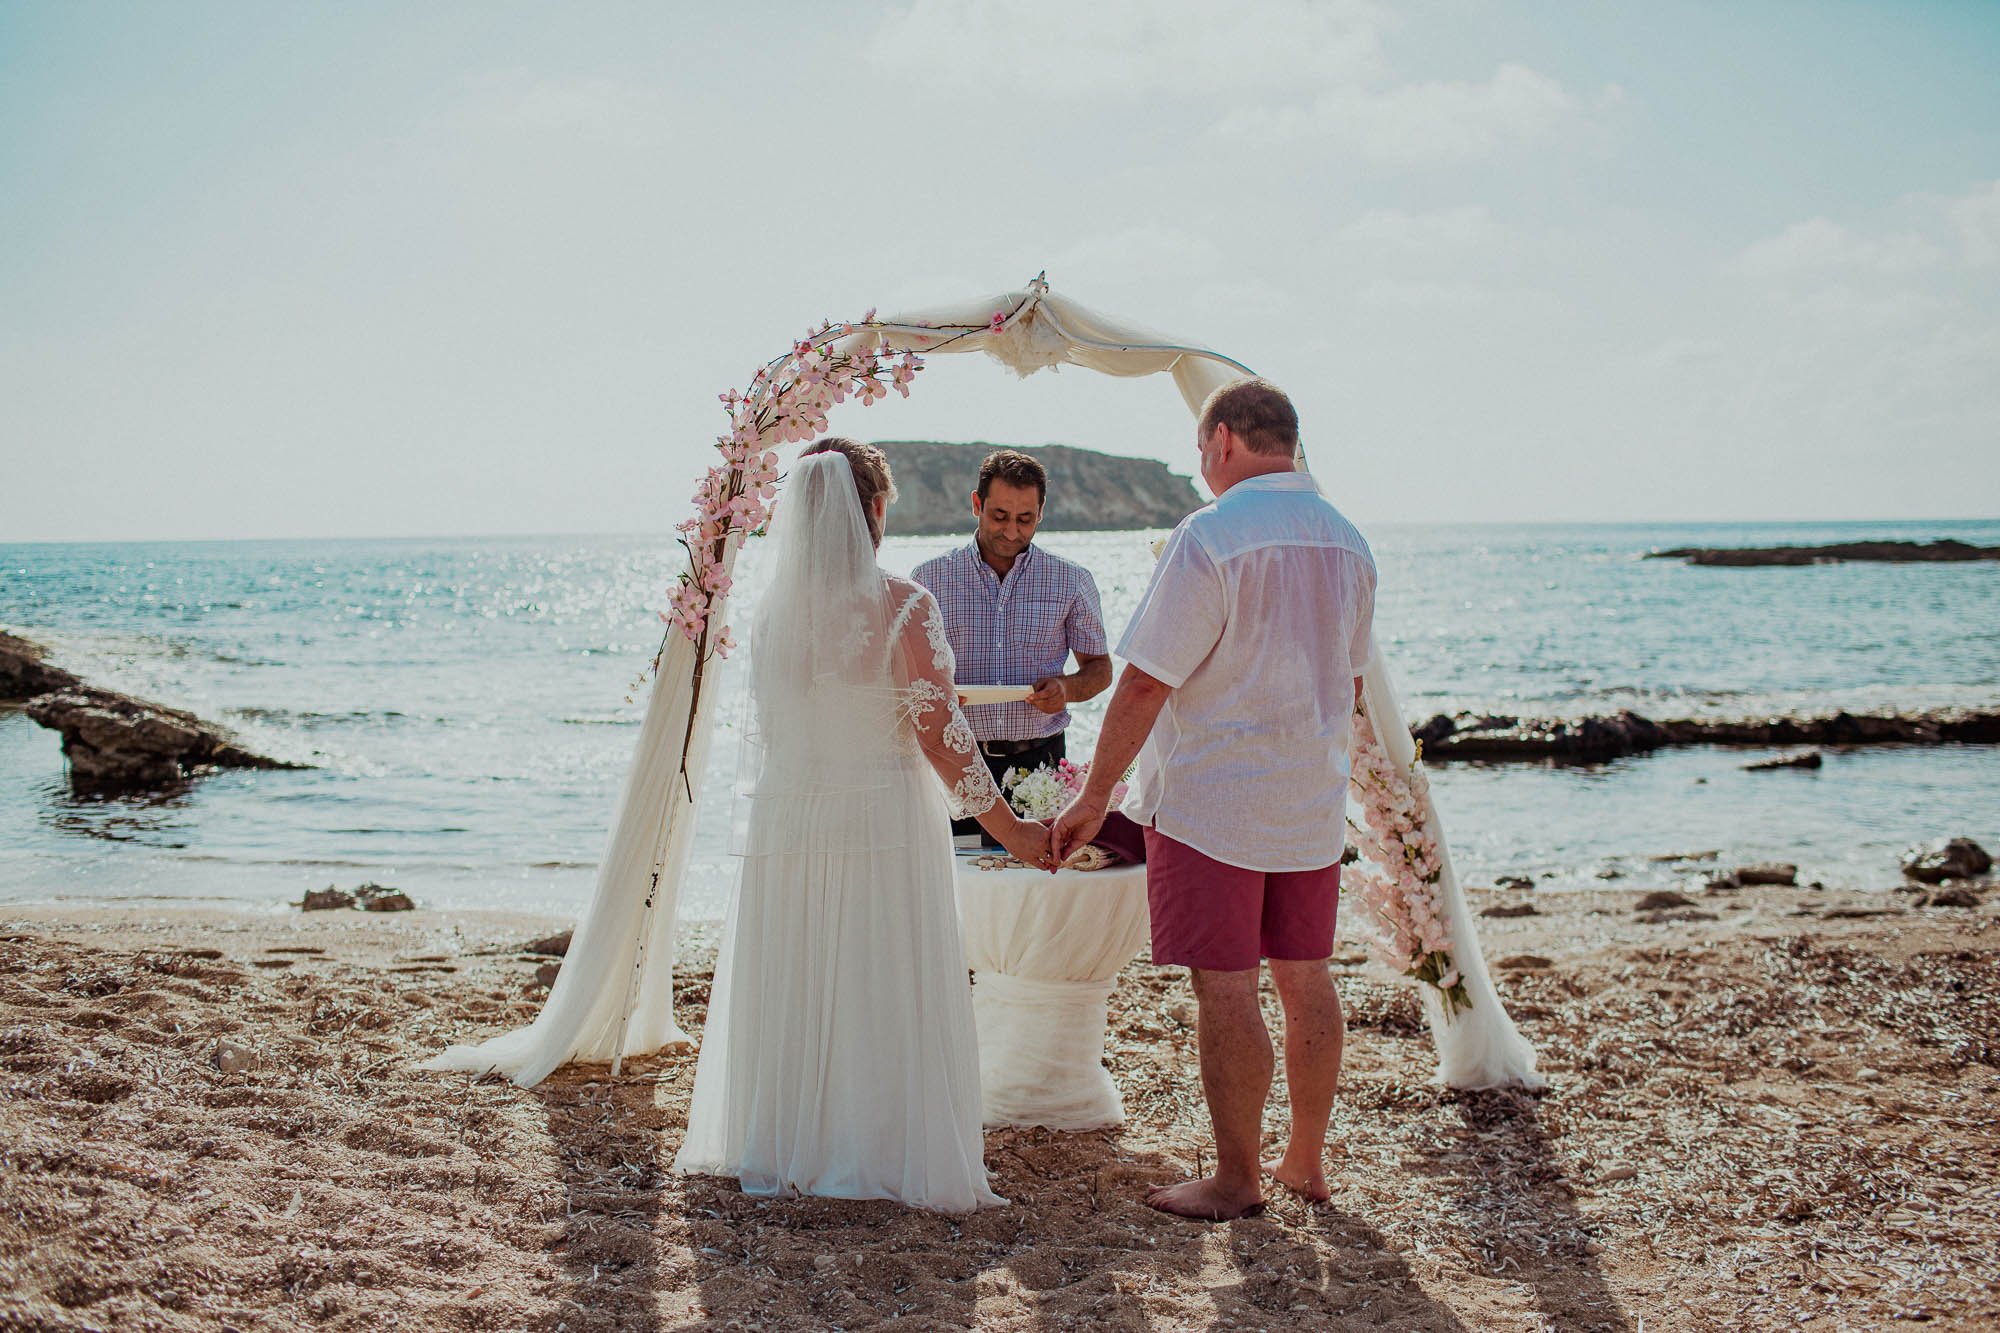 Groom marrying bride on St Georges beach peyia paphos